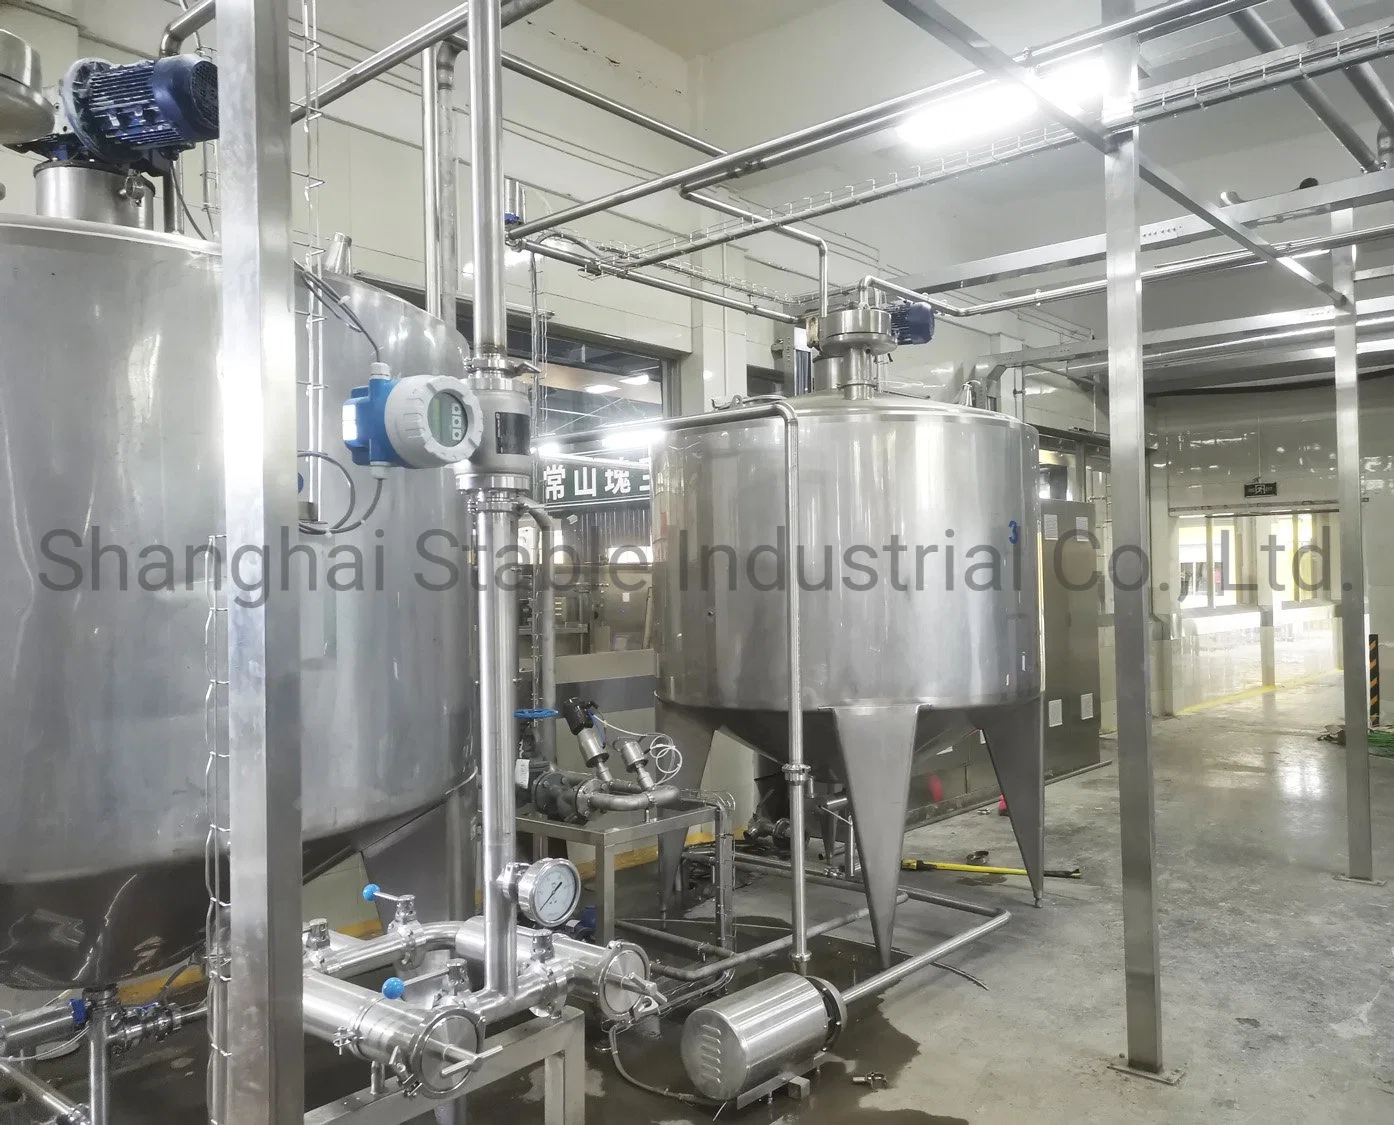 Автоматическое управление с помощью ПЛК Siemens горячий фруктовый сок для приготовления чая и кокосовой воды розлива напитков производства обработки заполнение станочная линия для питья завод